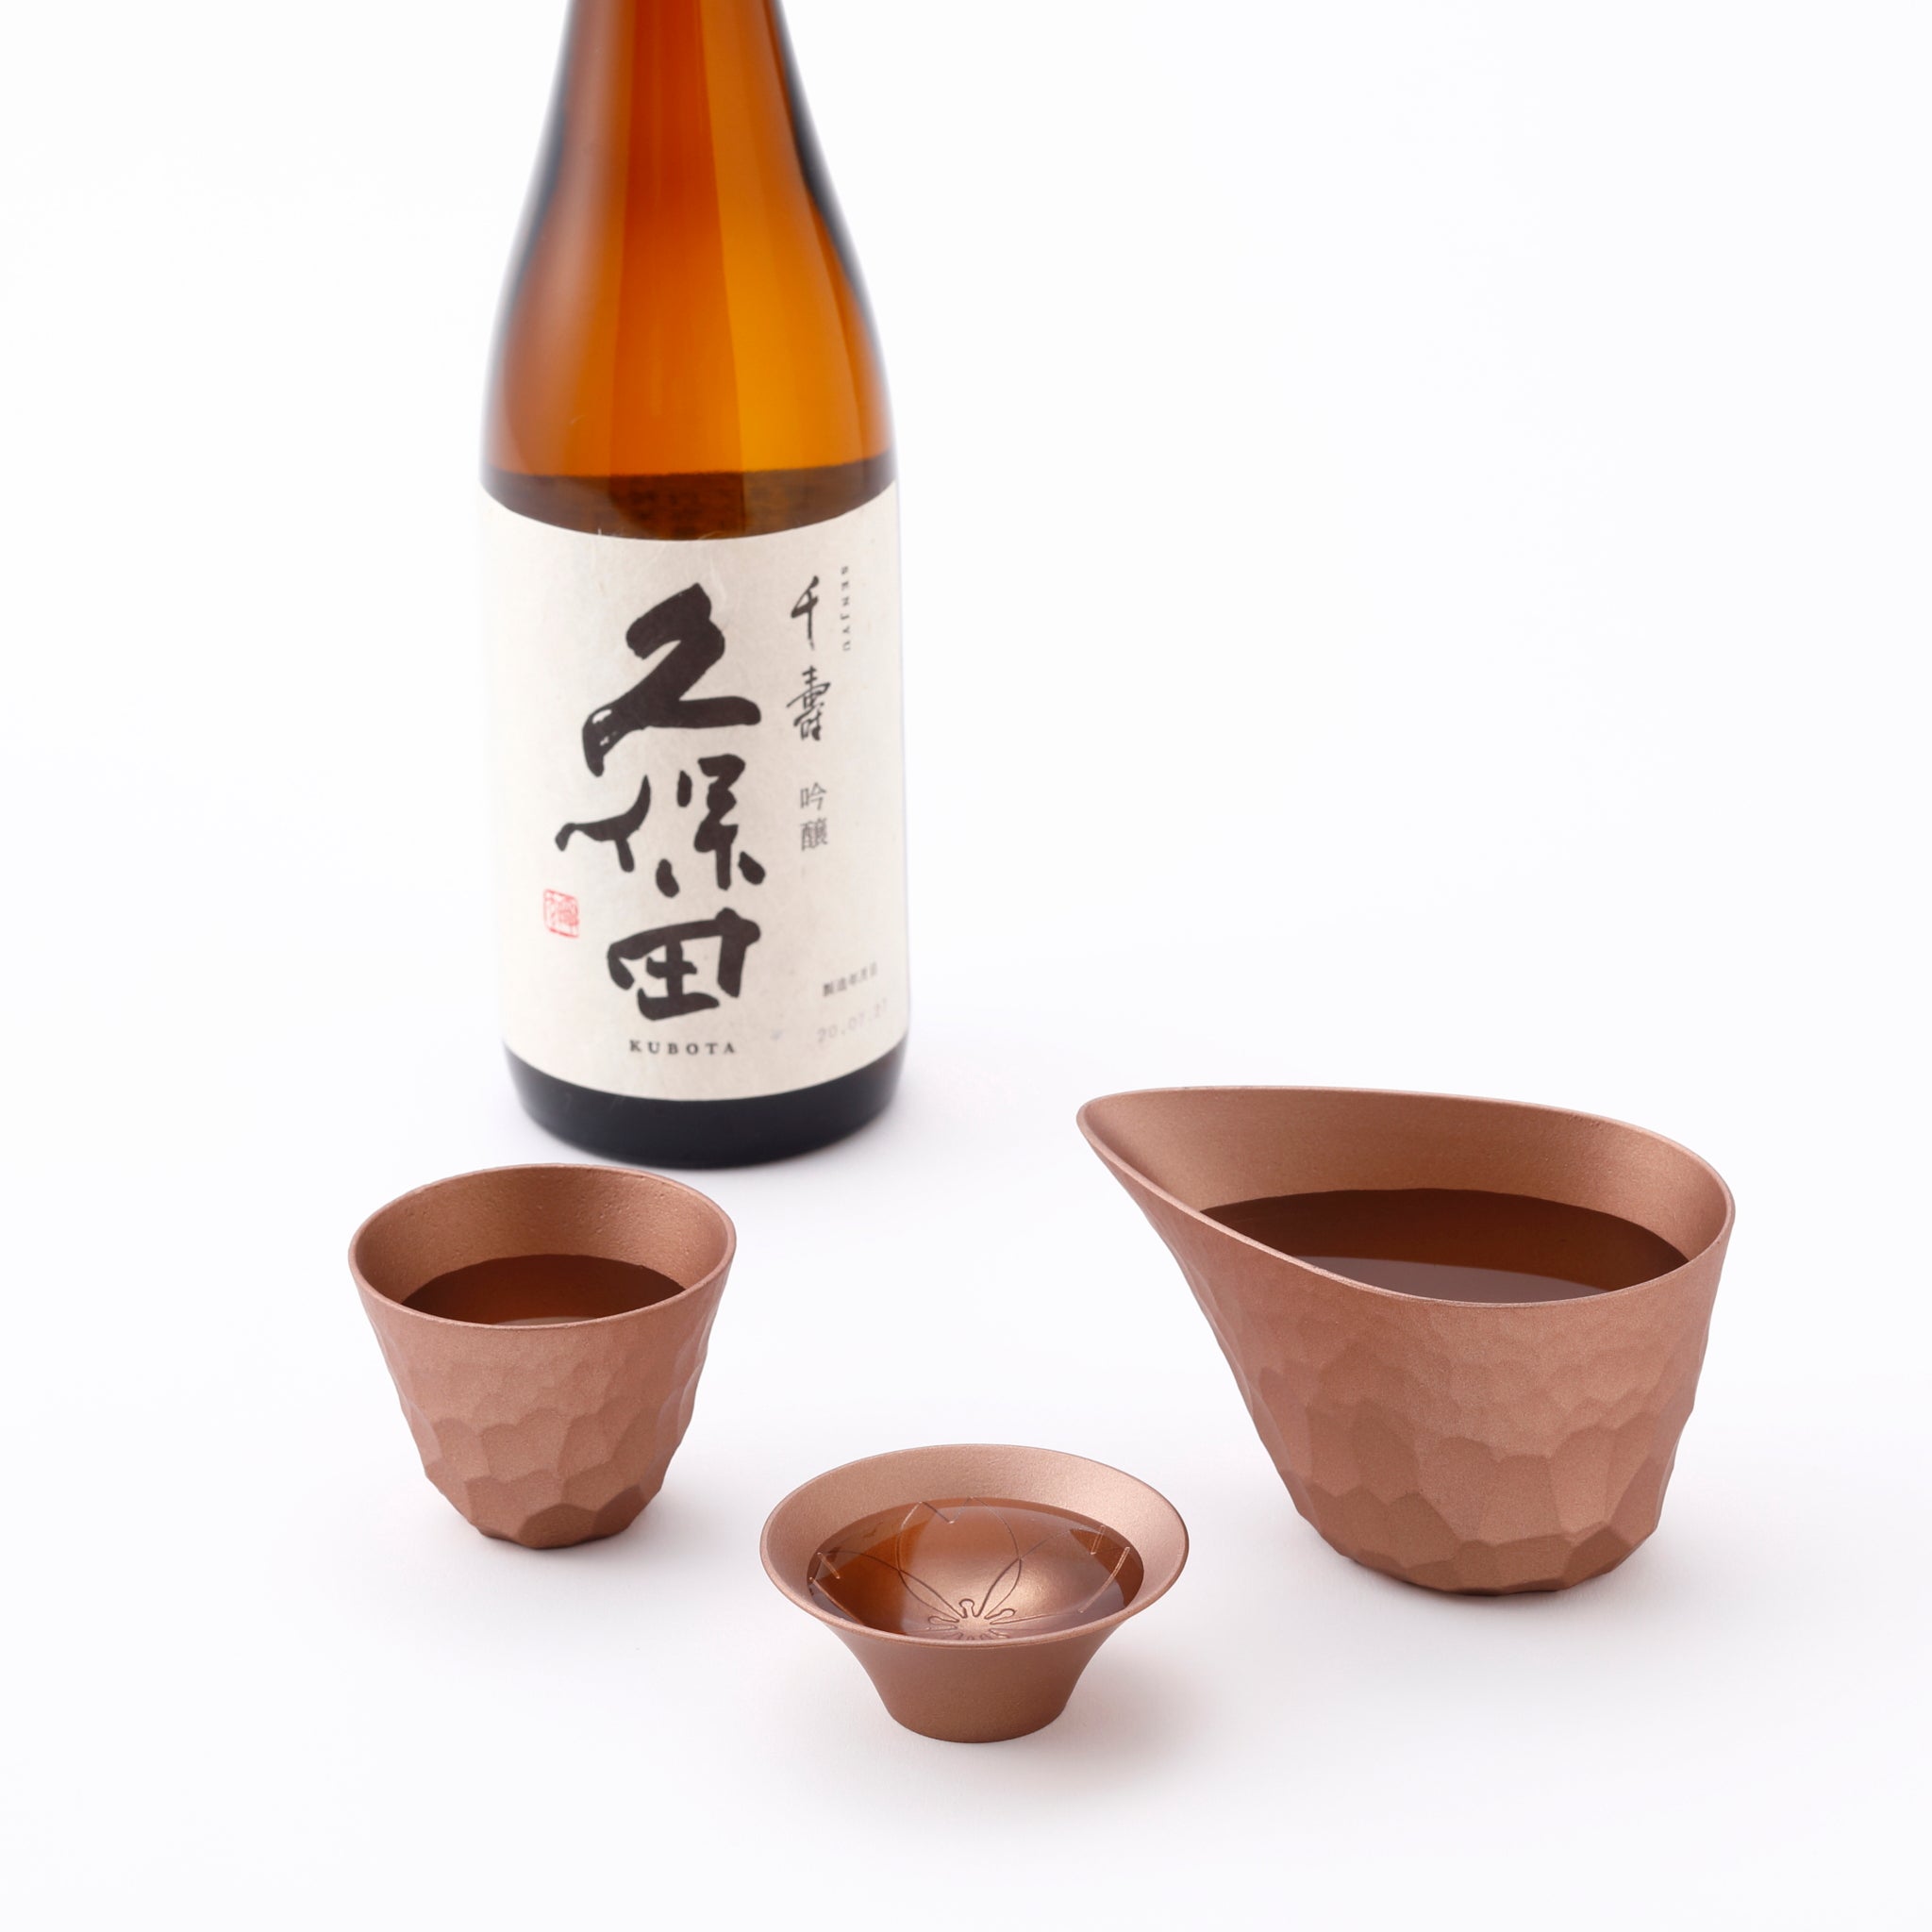 Copper Sake Drinking Set